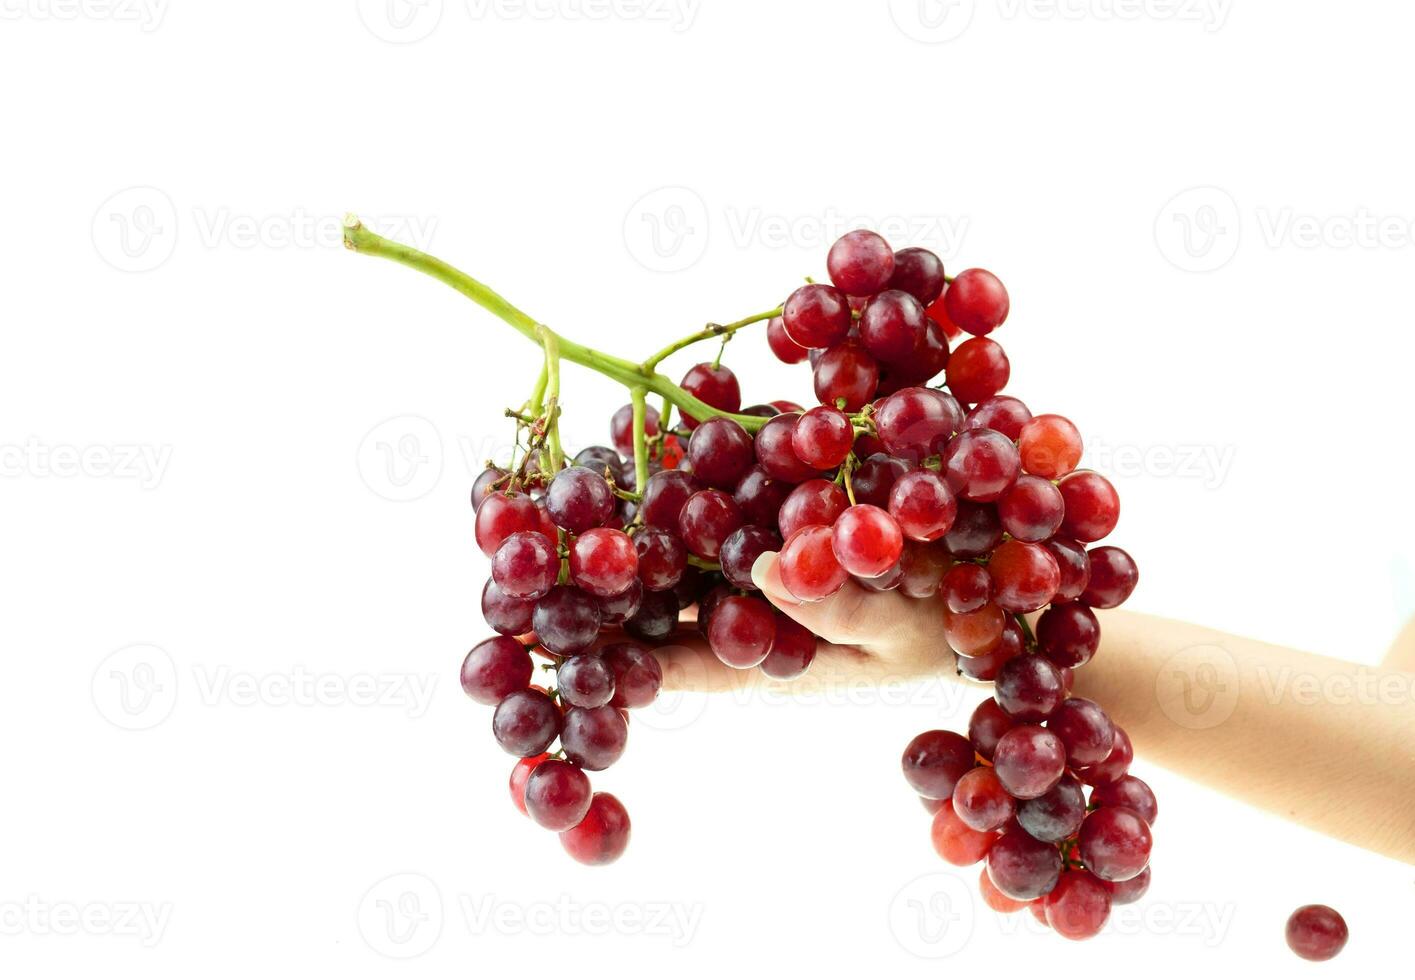 grappolo di uva rossa matura in mano di una signora su uno sfondo bianco foto